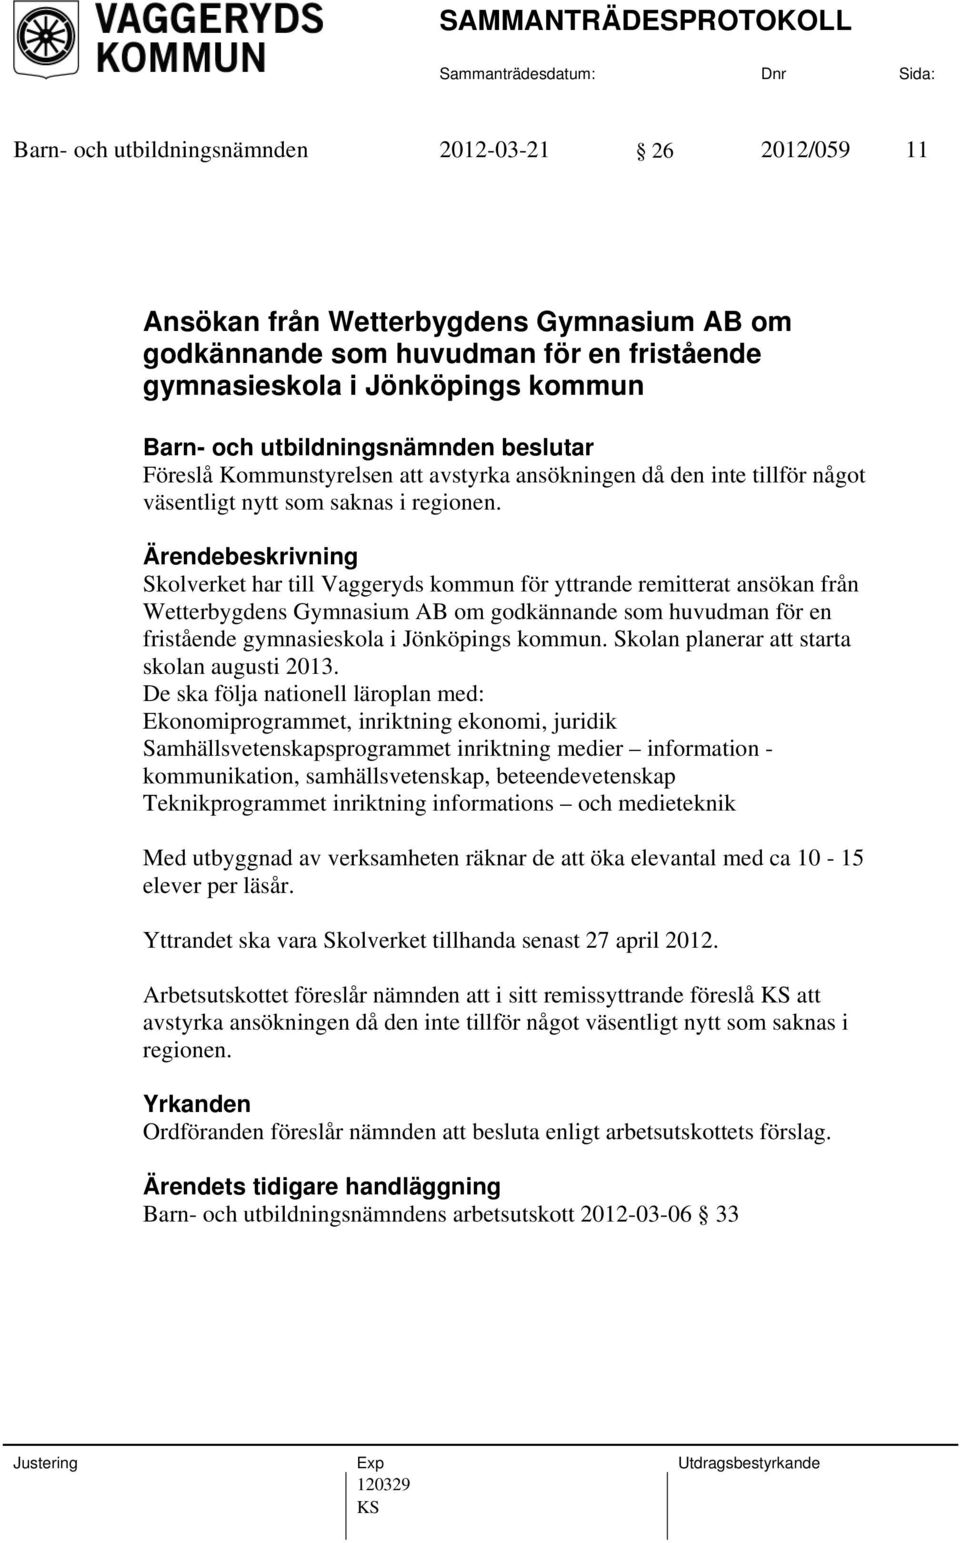 Skolverket har till Vaggeryds kommun för yttrande remitterat ansökan från Wetterbygdens Gymnasium AB om godkännande som huvudman för en fristående gymnasieskola i Jönköpings kommun.